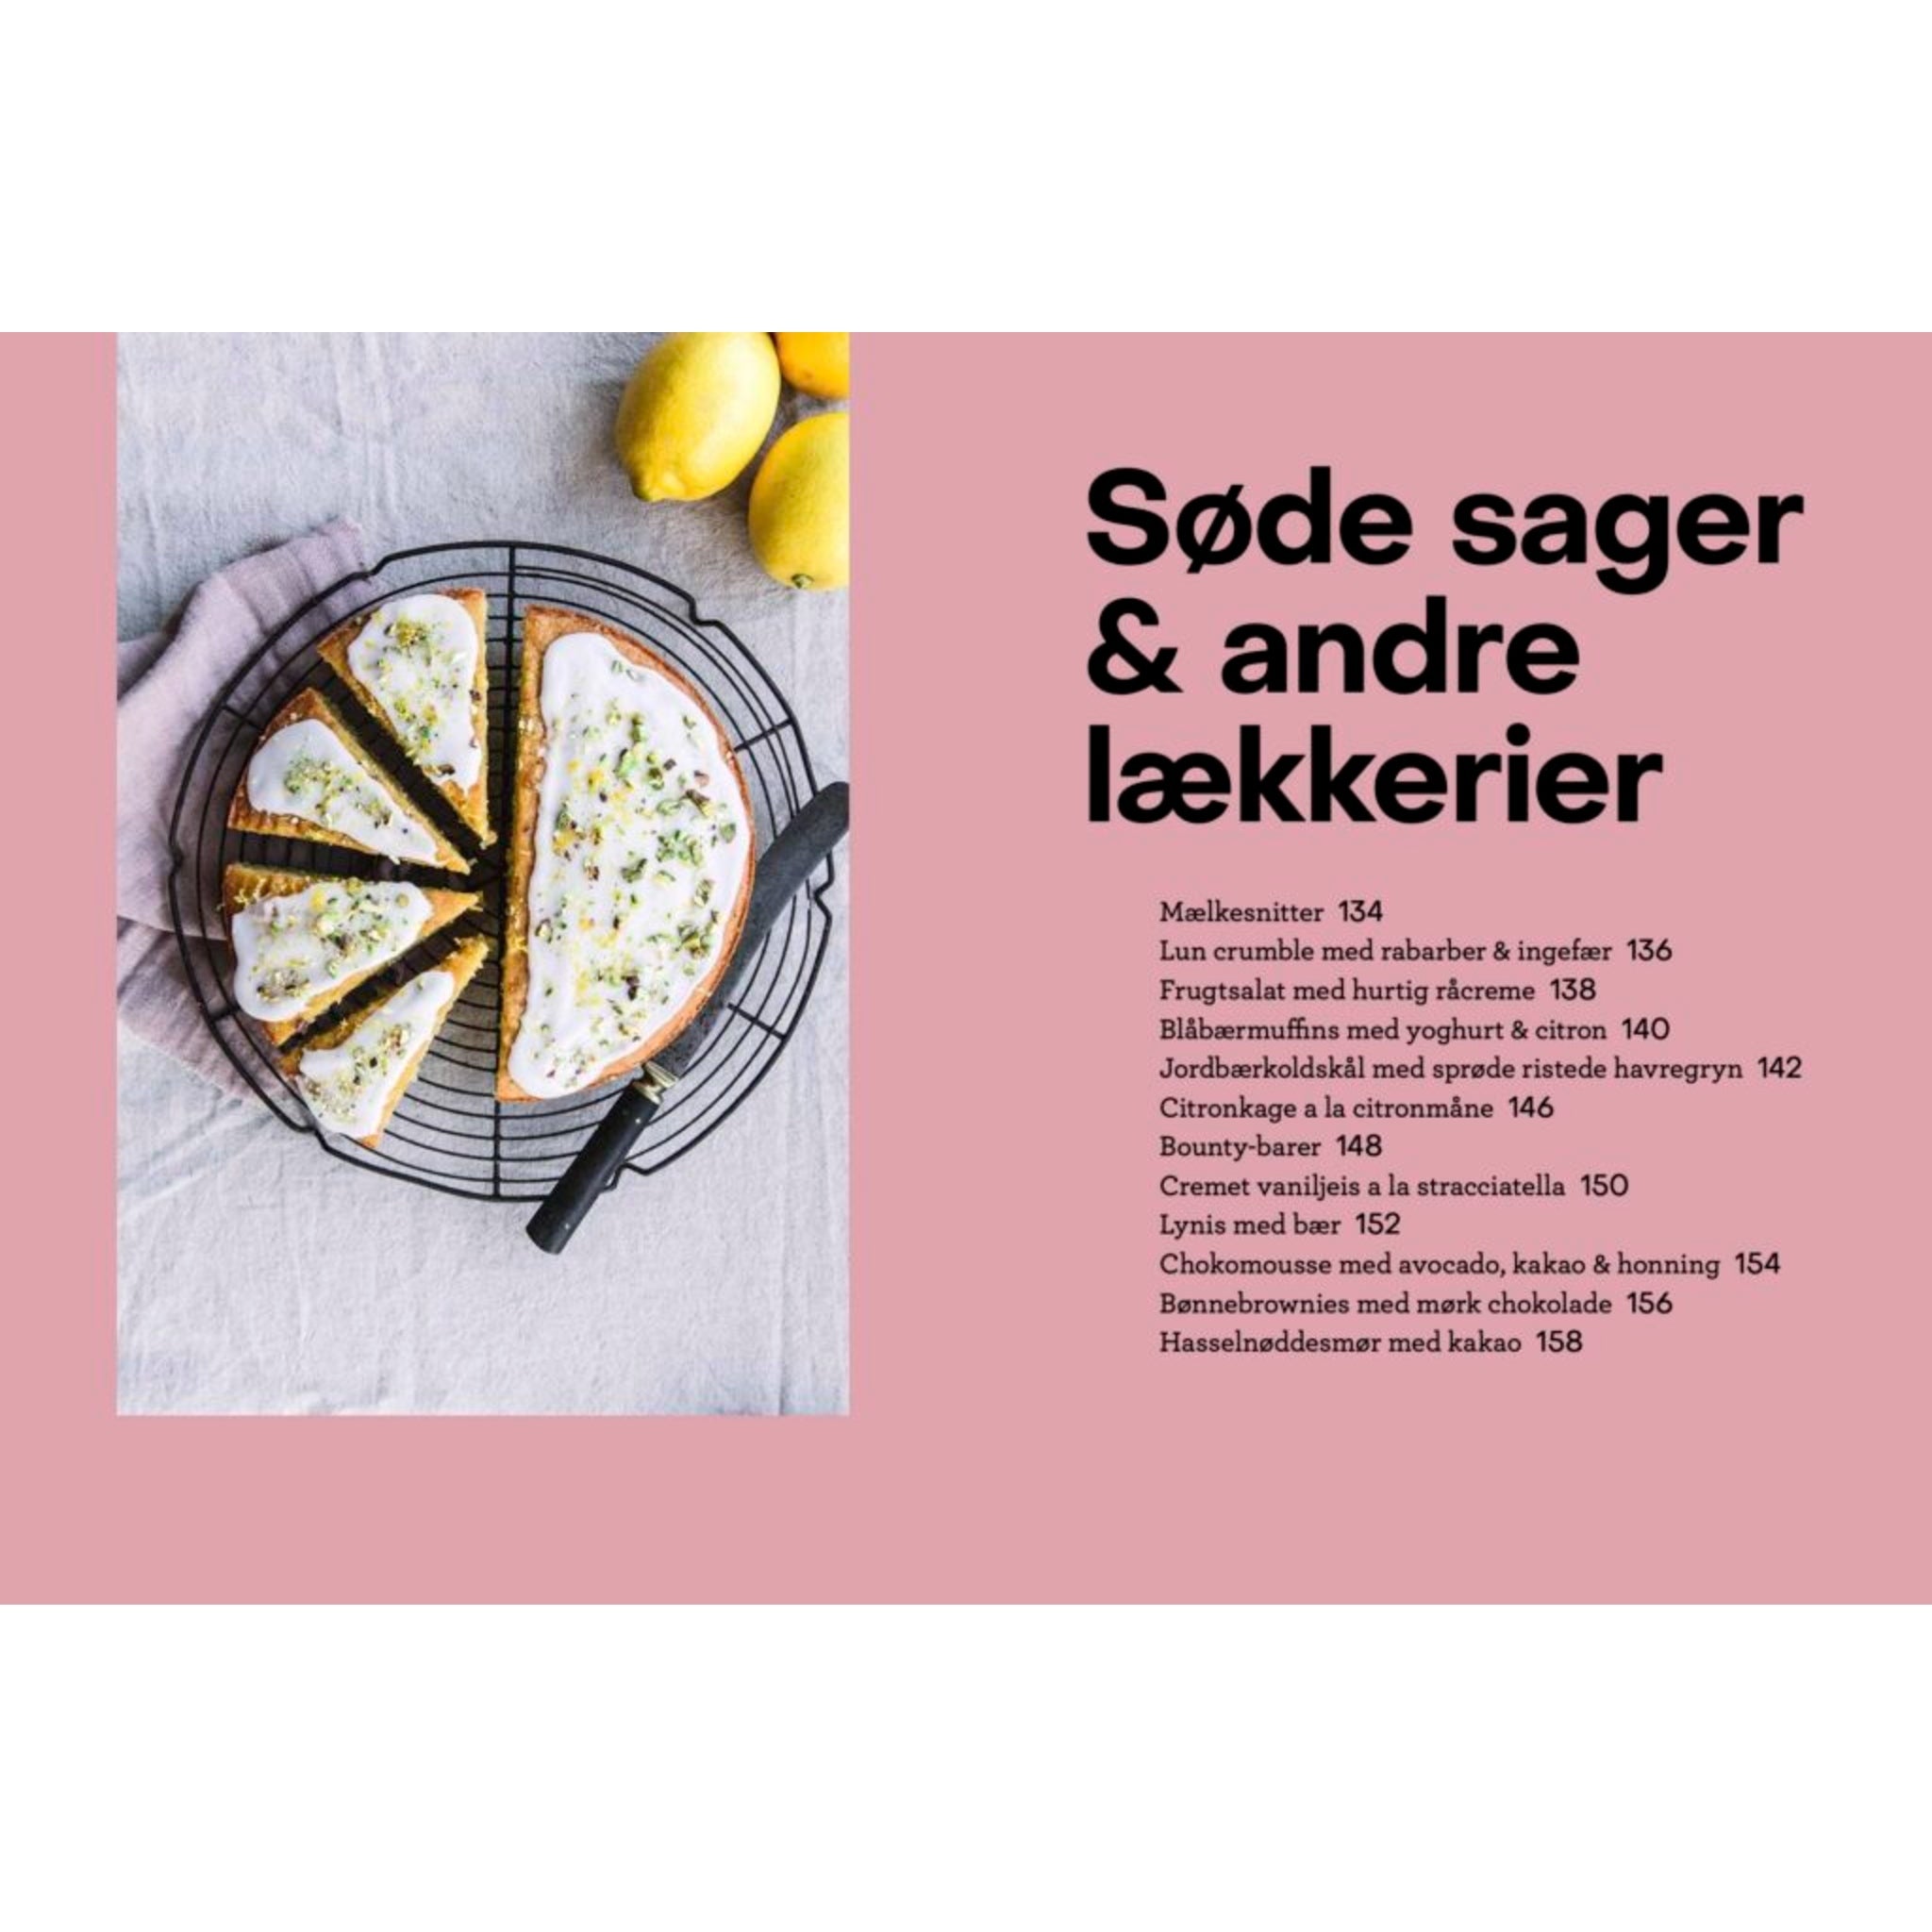 Oversigt over opskrifter på søde sager & andre lækkerier i Kost og kræft, kogebog af Ditte Ingemann hos Oliviers & Co